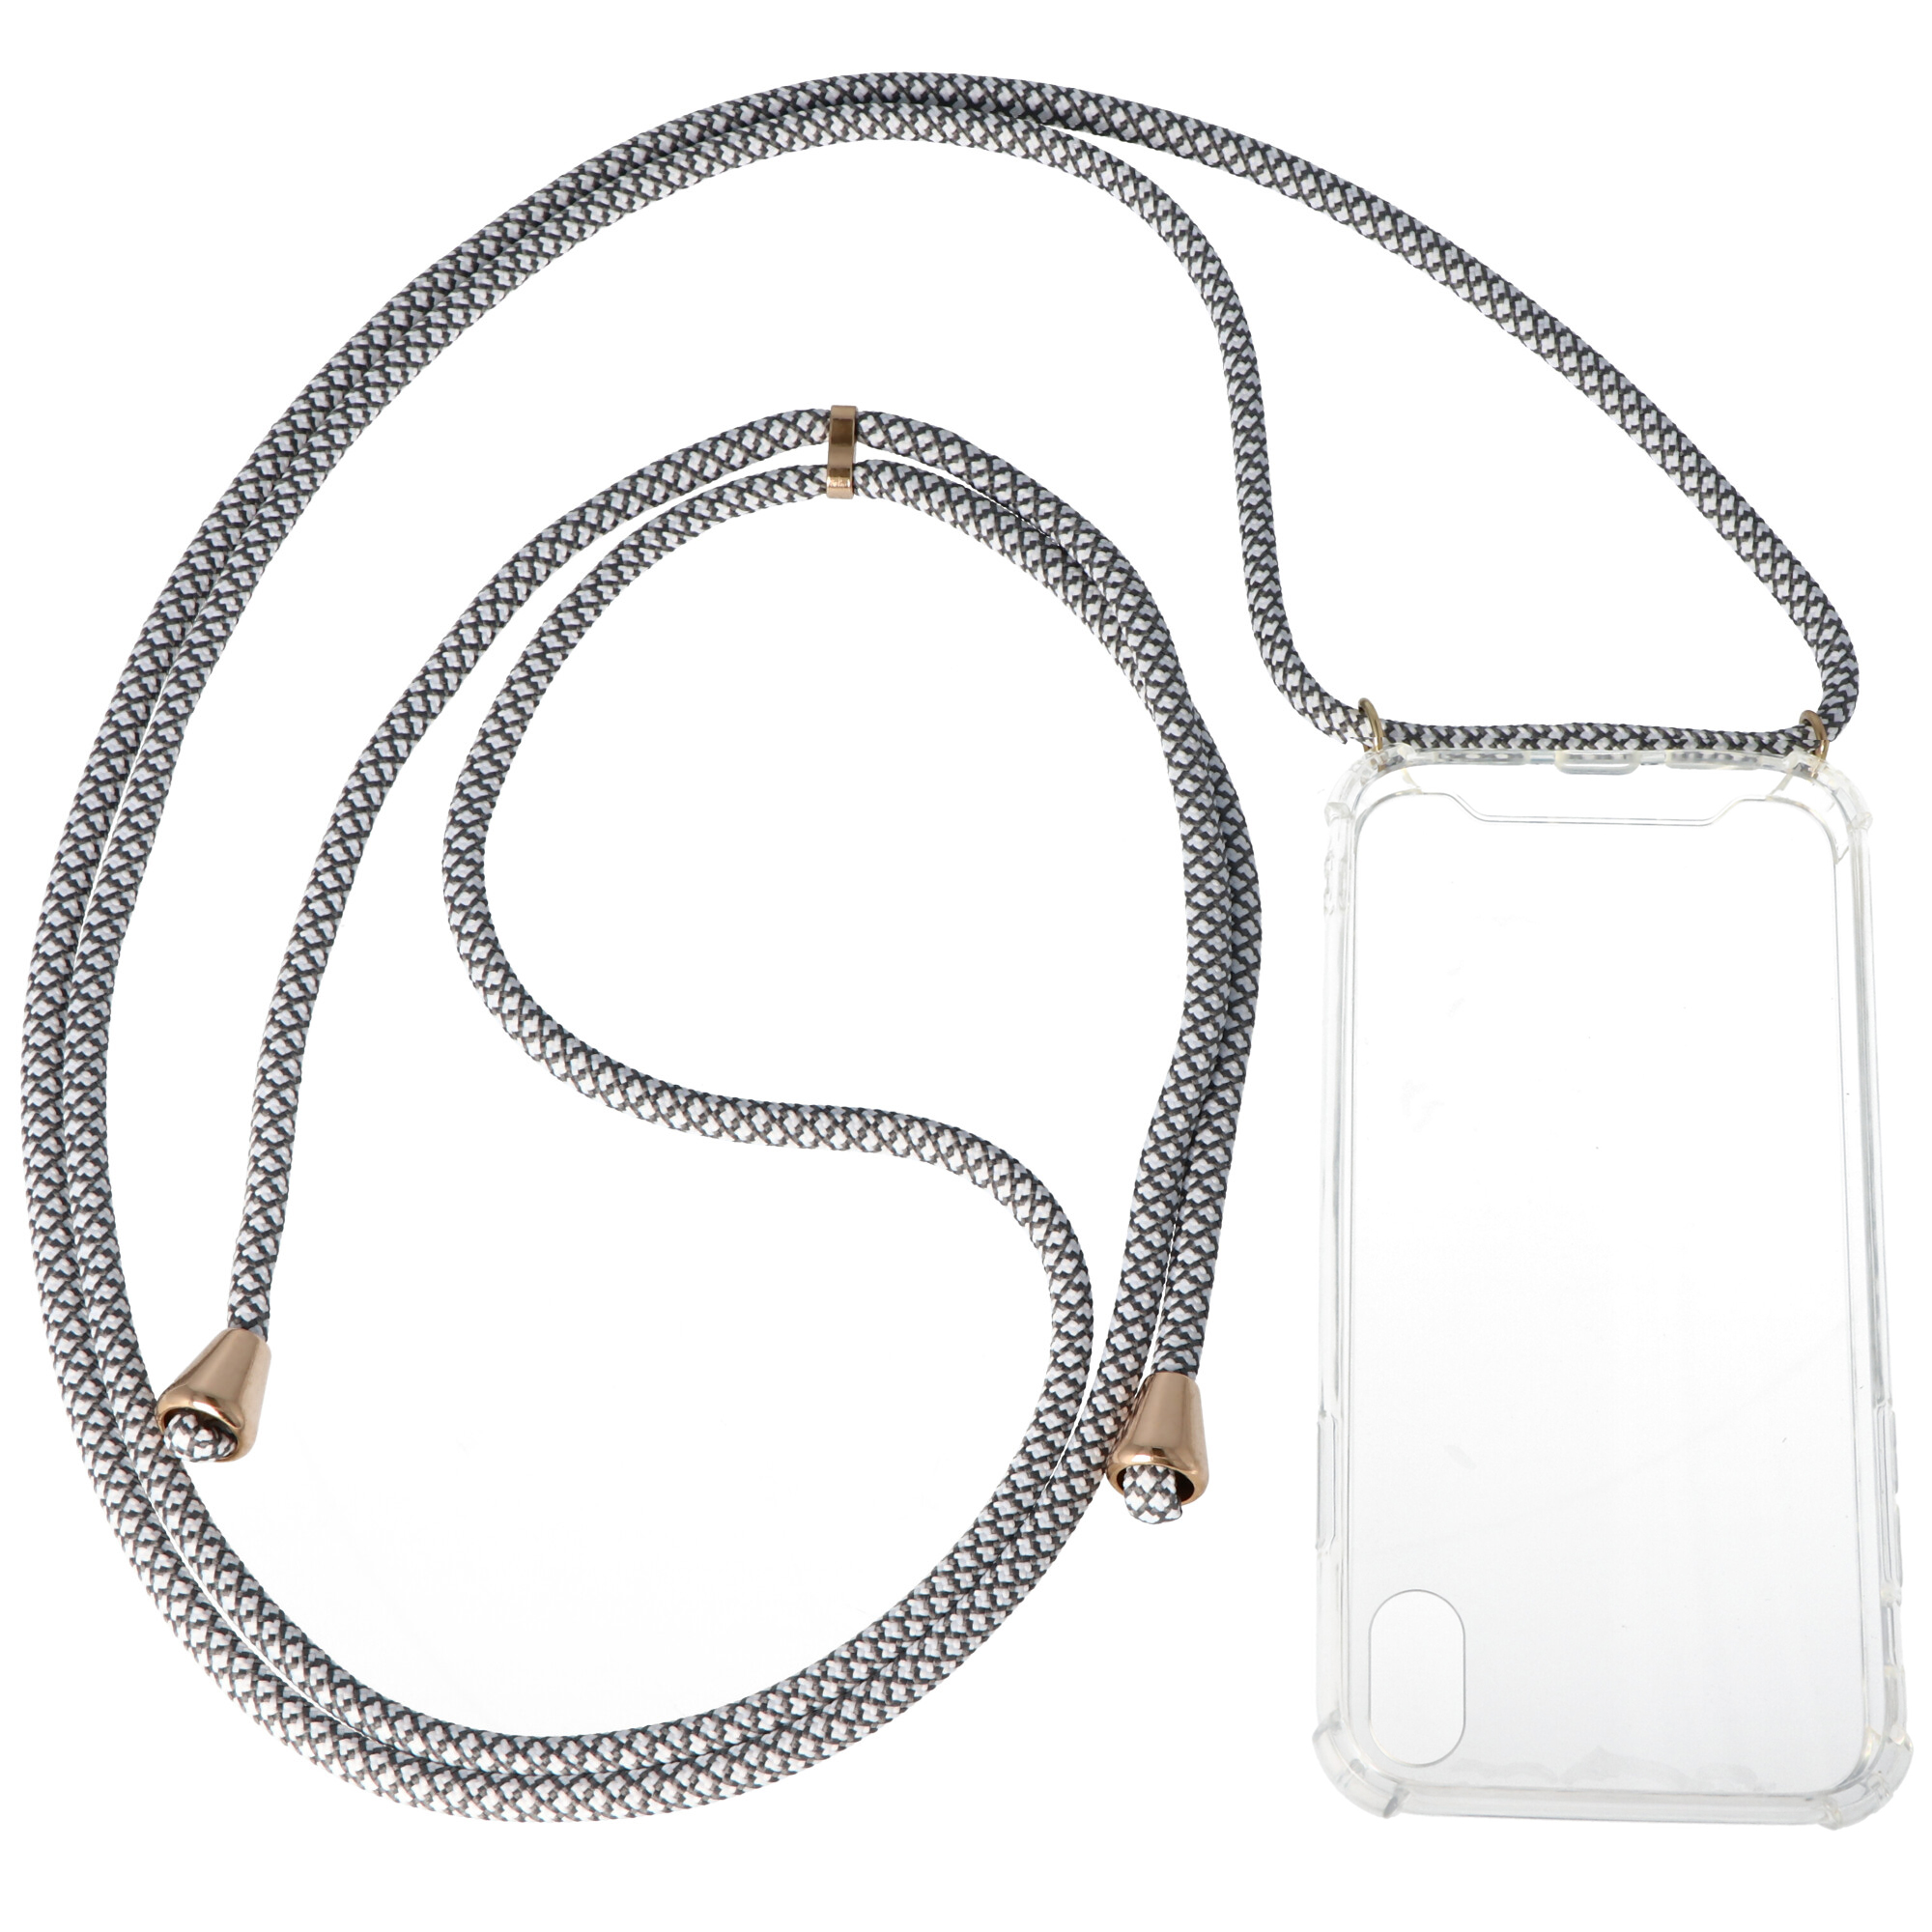 Necklace Case passend für Apple iPhone X, iPhone XS, Smartphonehülle mit Kordel grau,weiß zum Umhängen